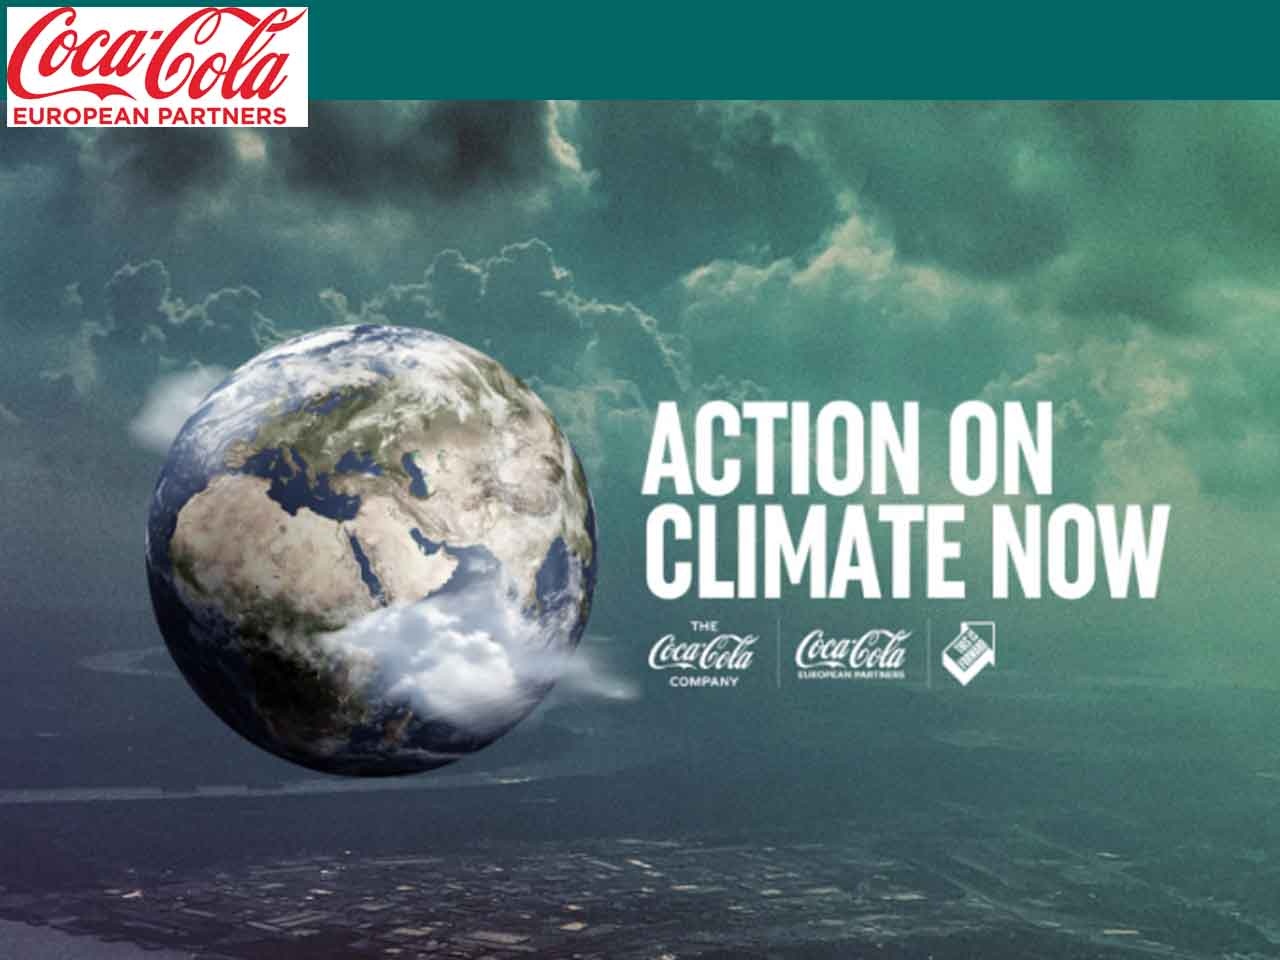 Le groupe Coca-Cola European Partners s’engage à atteindre la neutralité carbone d’ici 2040